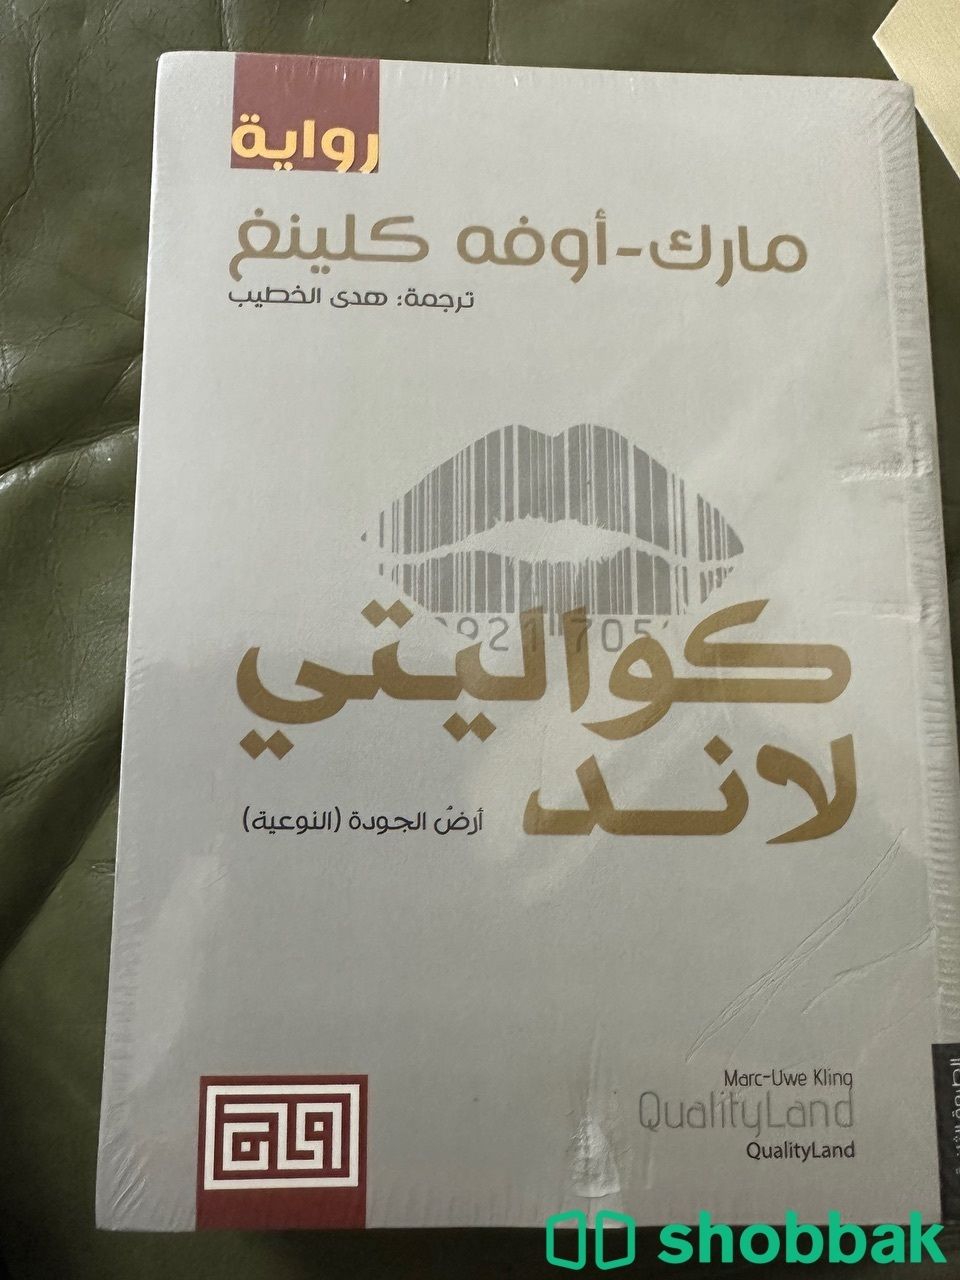 كتب جديدة وروايات للبيع  Shobbak Saudi Arabia